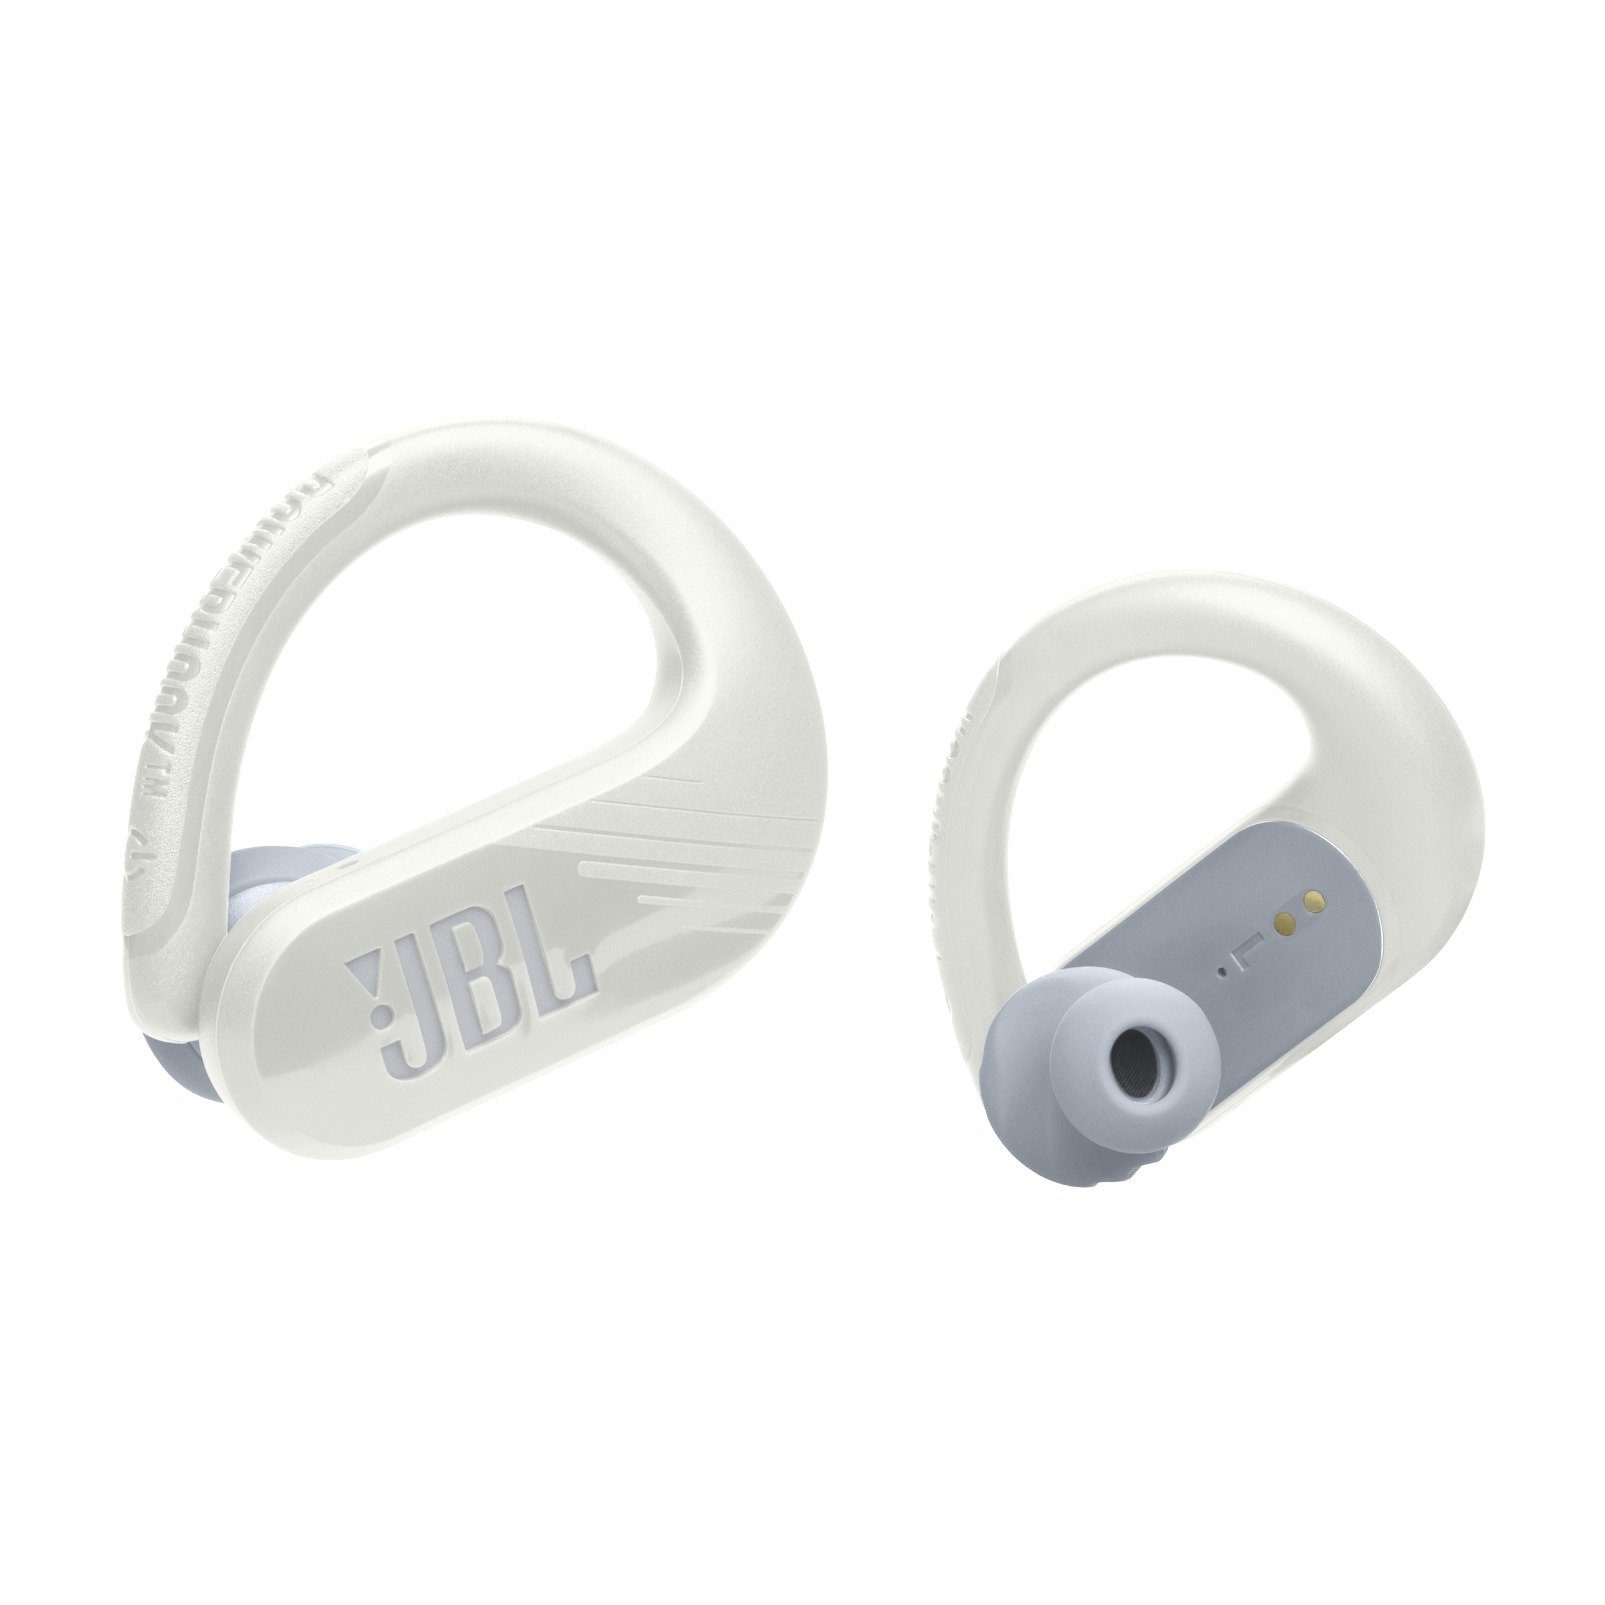 Weiß 3 JBL TW Earbuds - wireless Endurance In-Ear-Kopfhörer PEAK Sport